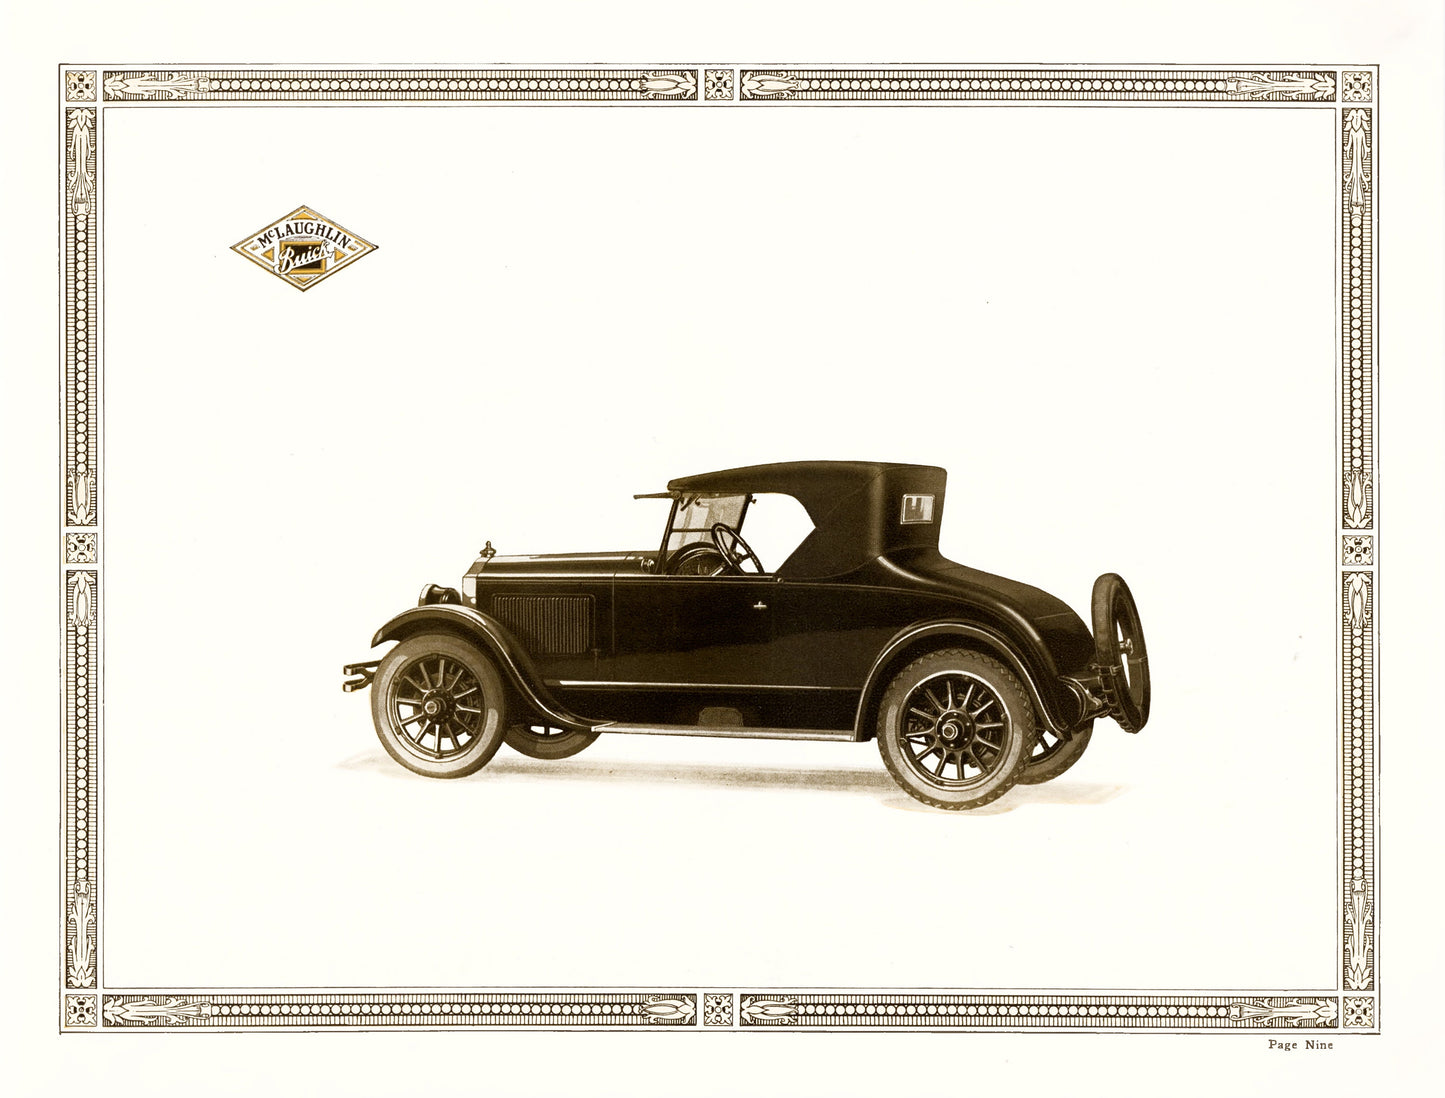 Antique Car Catalogue Advertisements [20 Images]